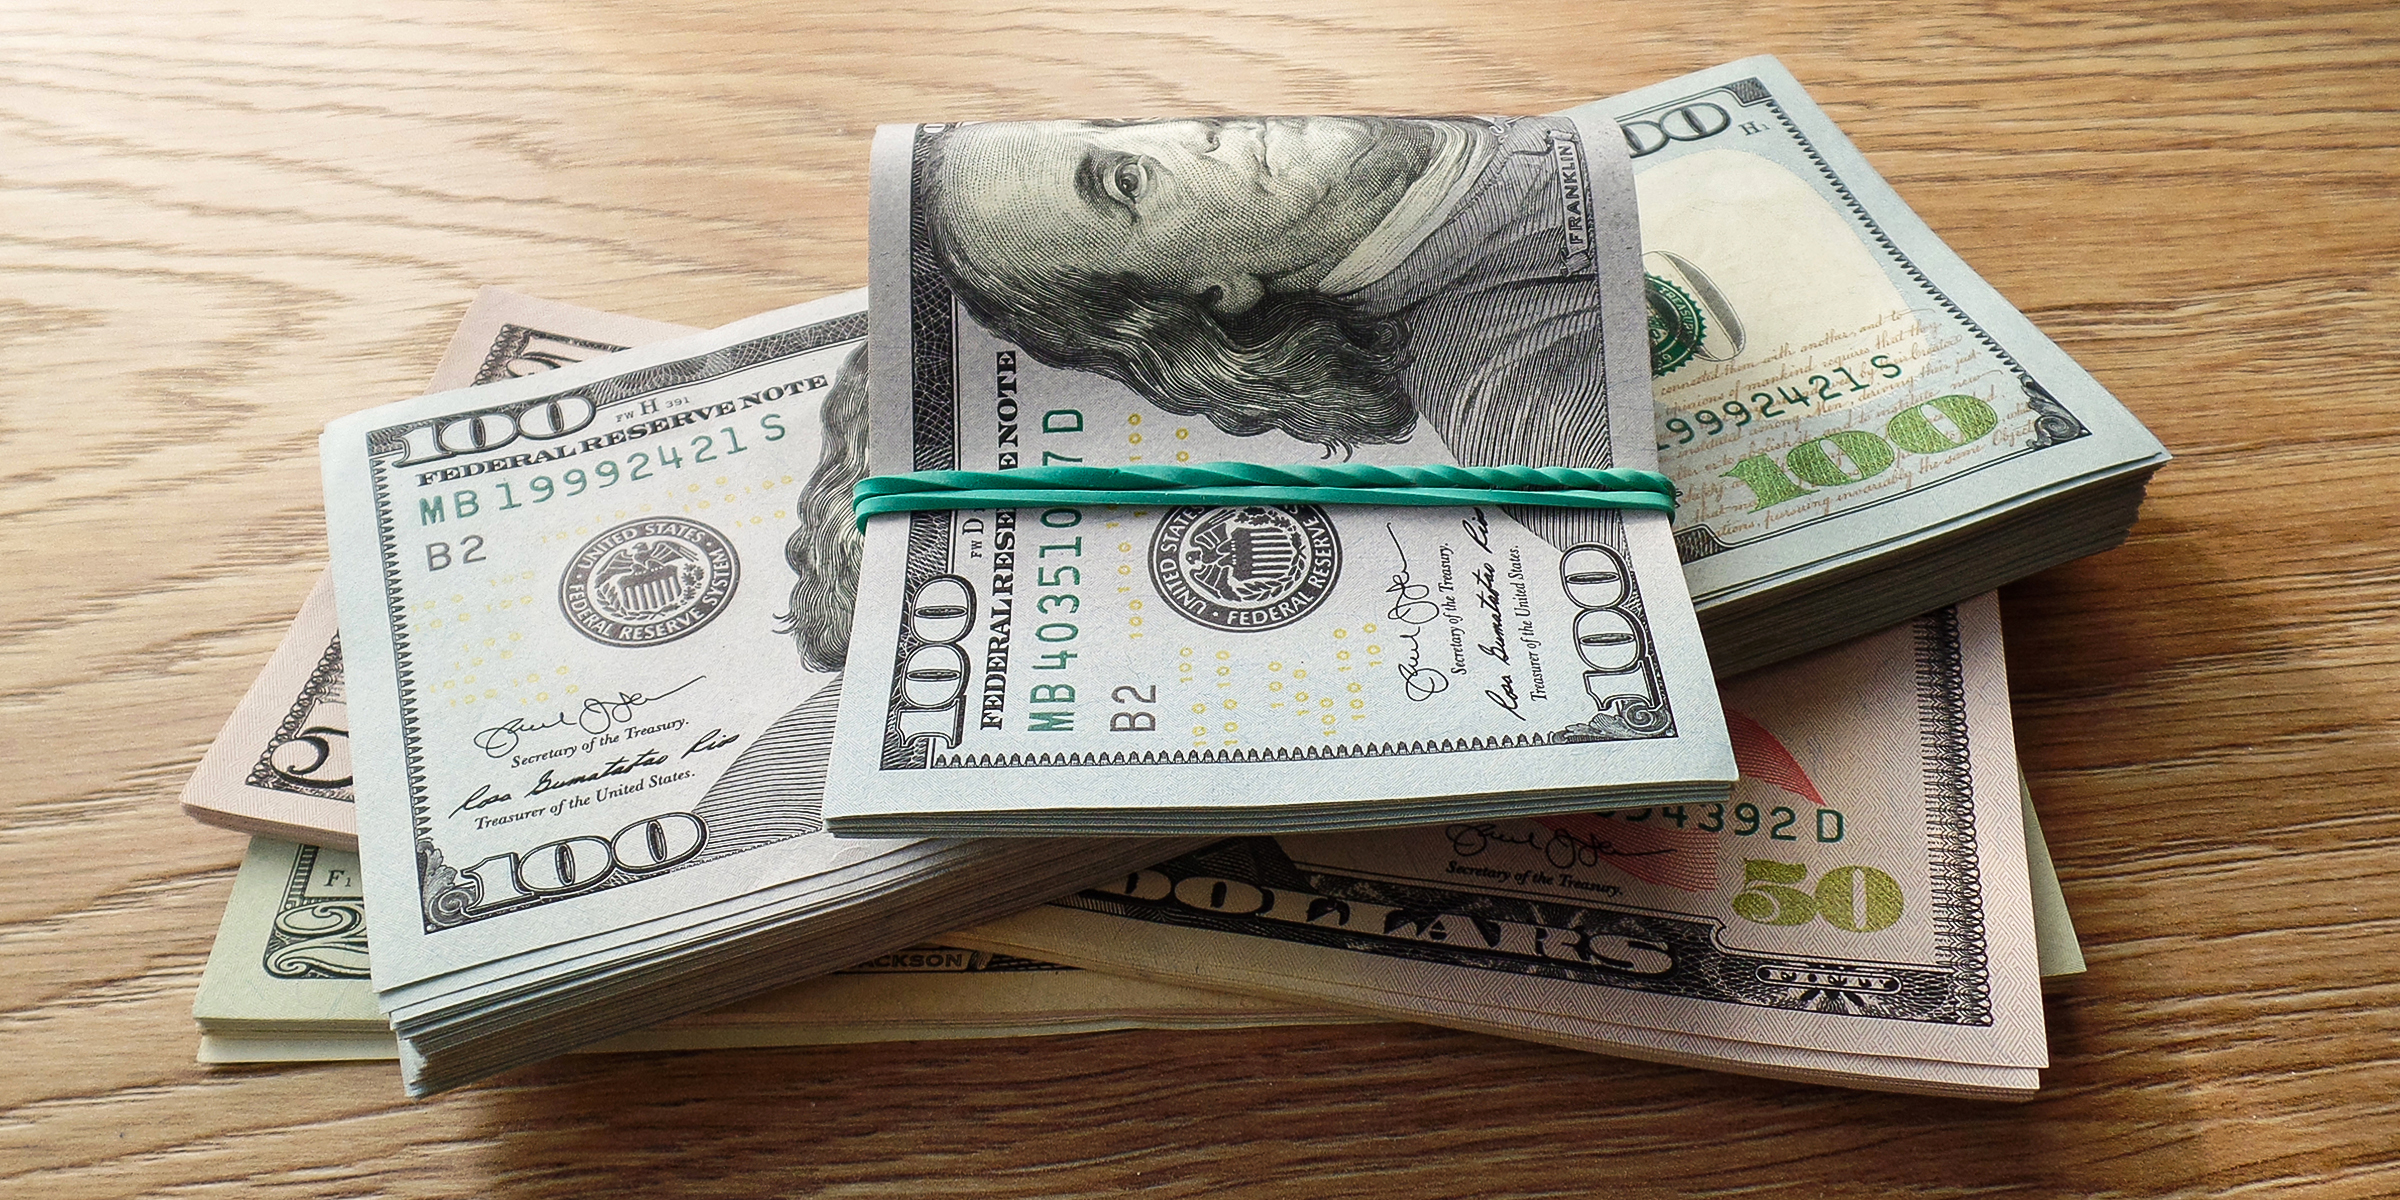 Fajos de dinero sobre una mesa | Fuente: Shutterstock